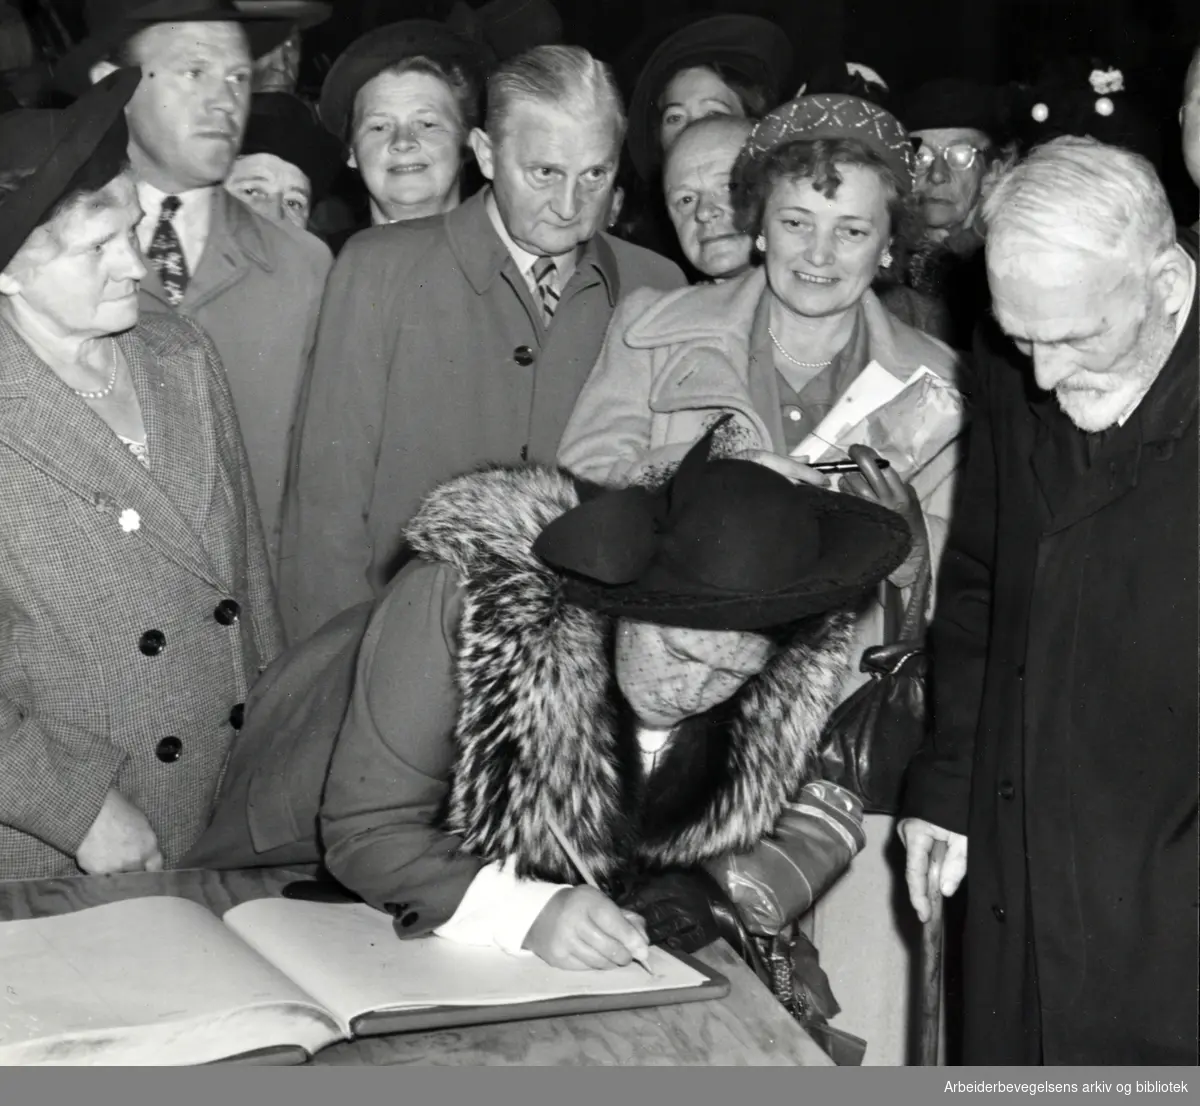 Oslo rådhus åpnes for publikum. Besøkende skriver sine navn i gjesteboken. 22. mai 1950